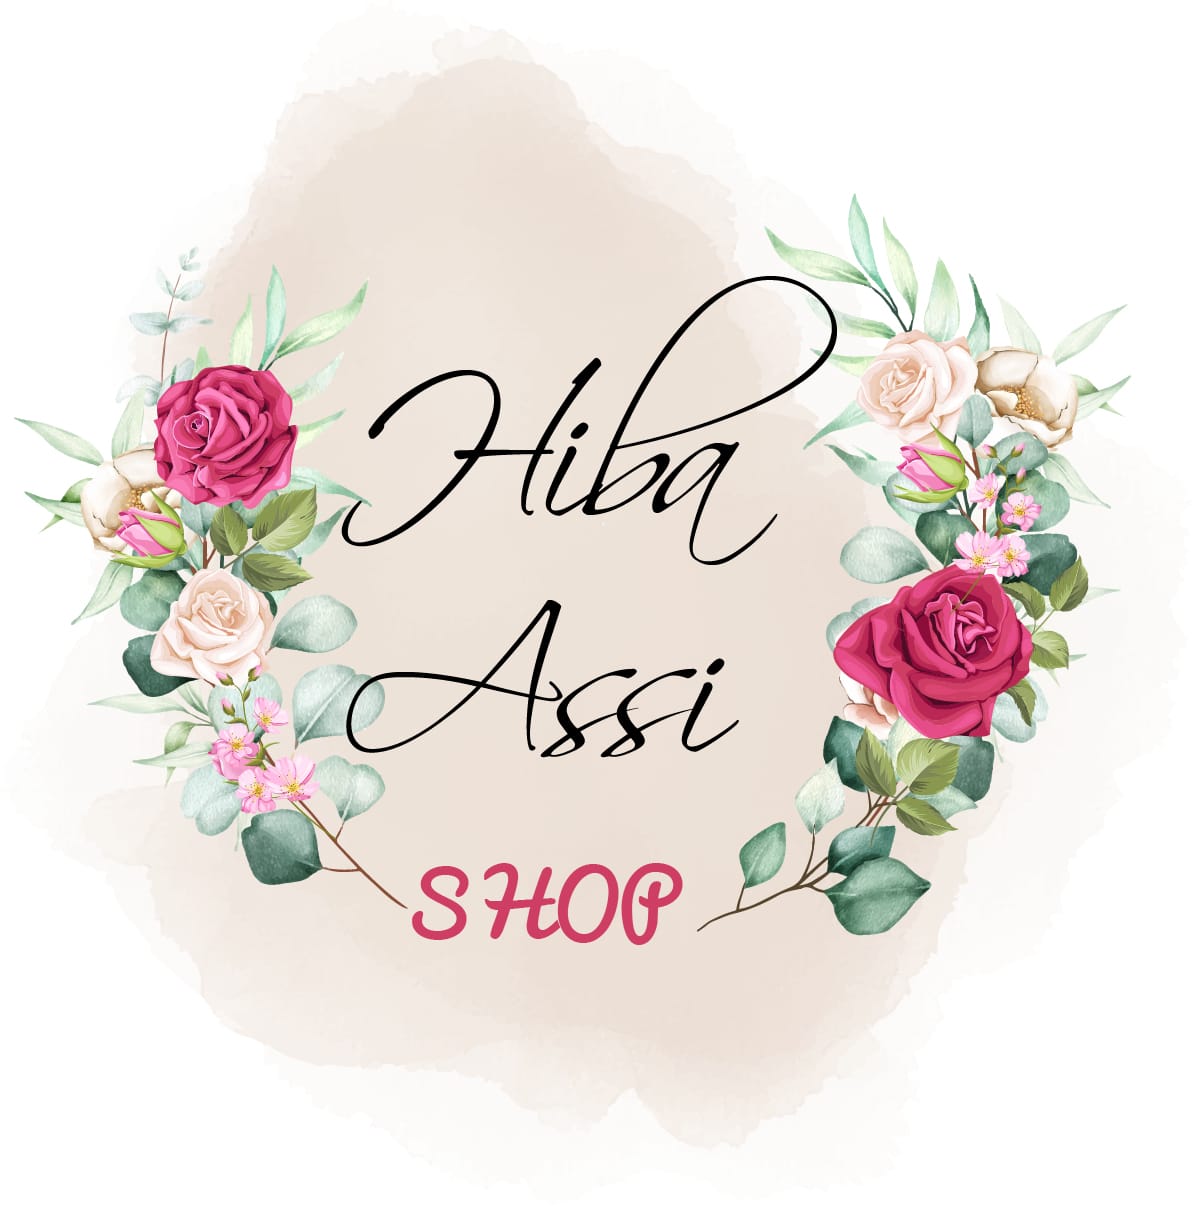 Hiba_Assi_shop